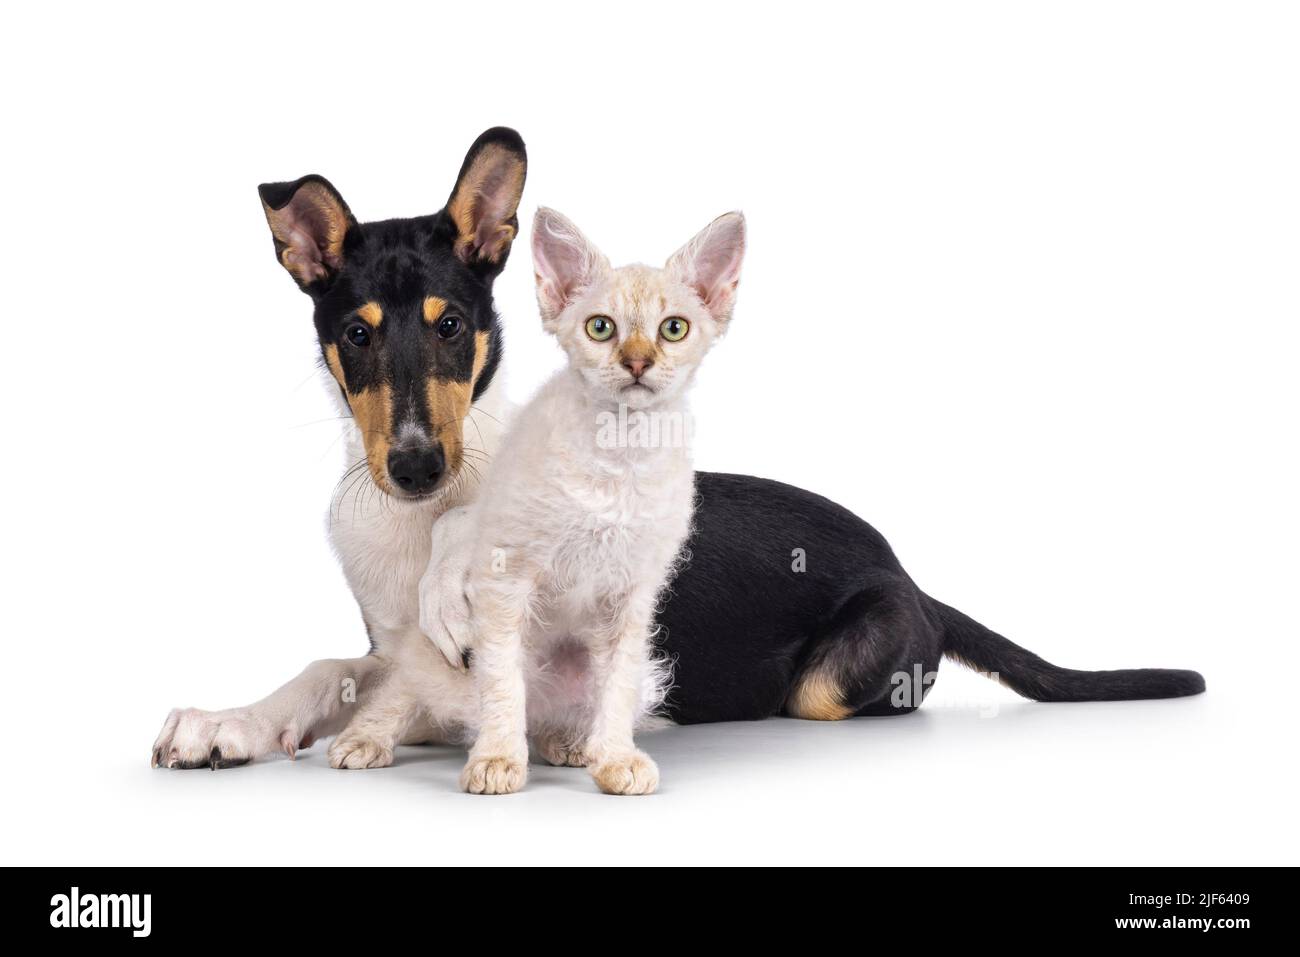 Cucciolo liscio di cane Collie e gattino di gatto LaPerm, steso e seduto insieme. Entrambi guardando verso la fotocamera. Isolato su sfondo bianco. Foto Stock